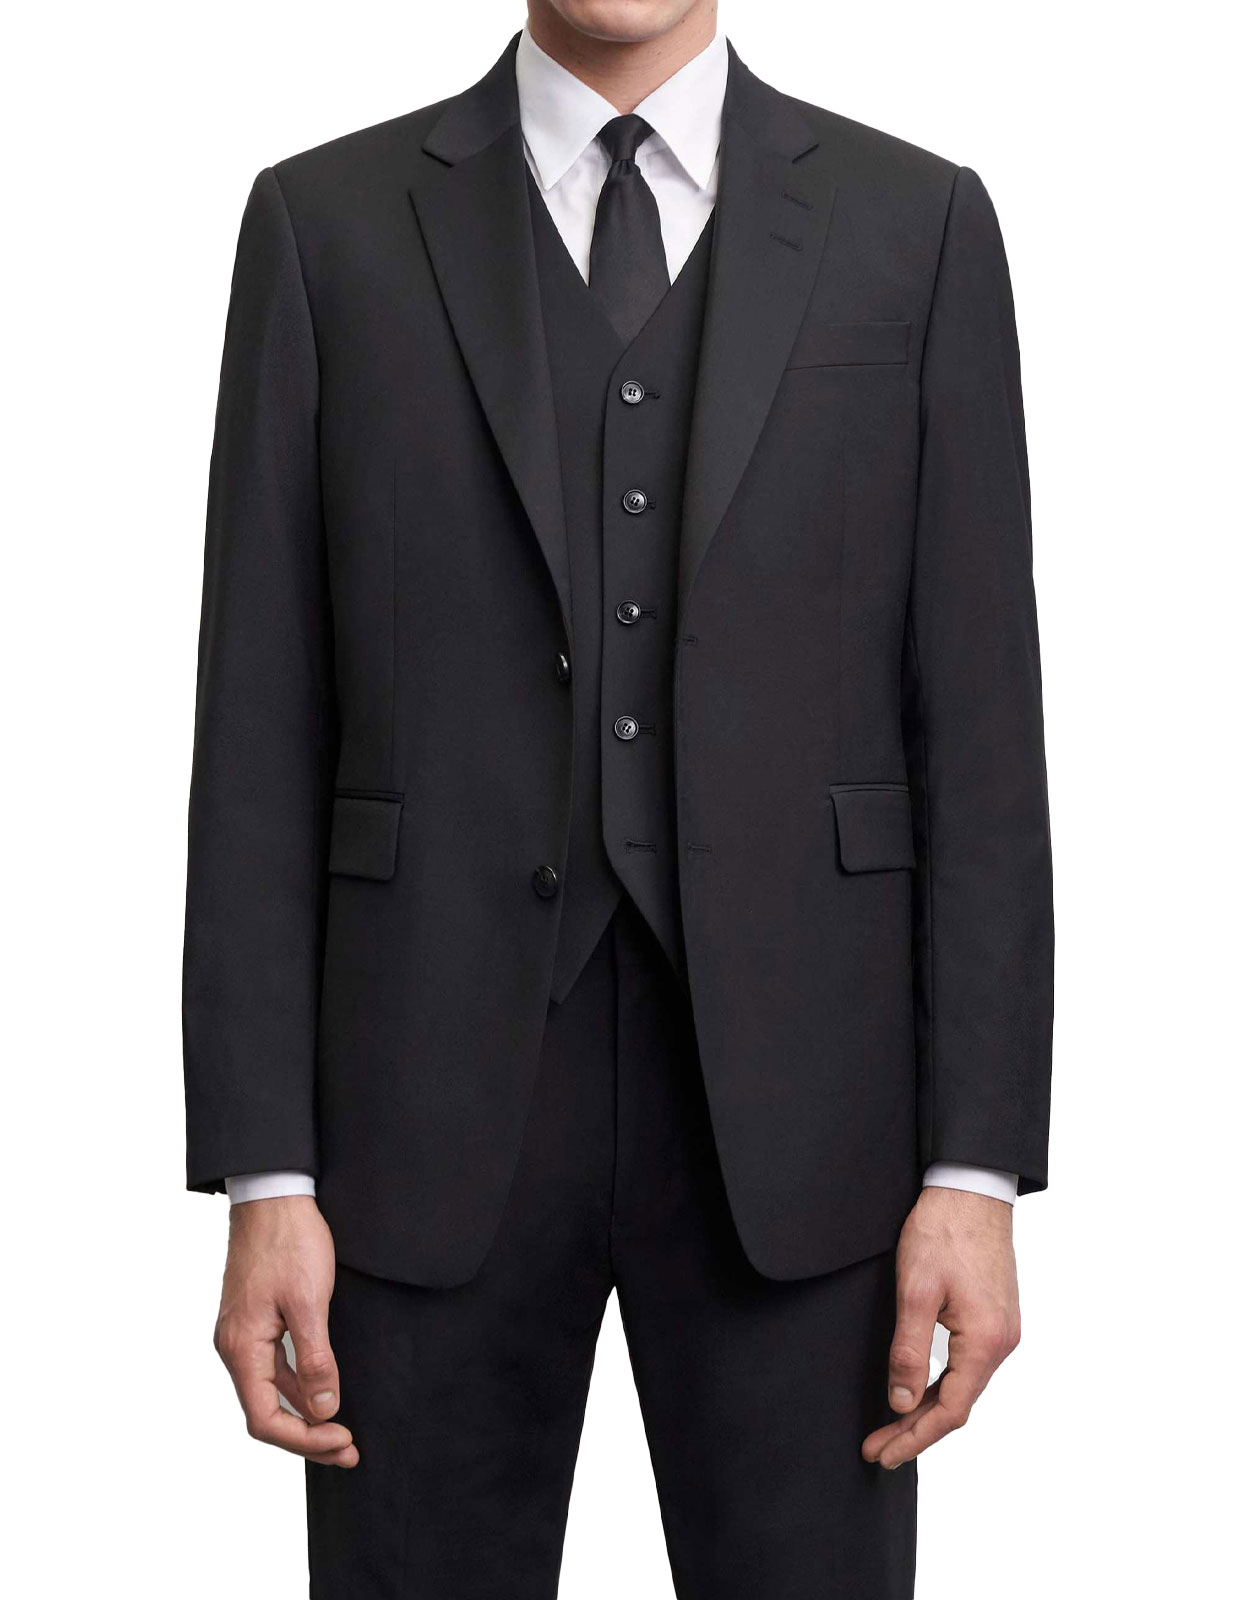 Wayde Waistcoat Suit Mix & Match Black